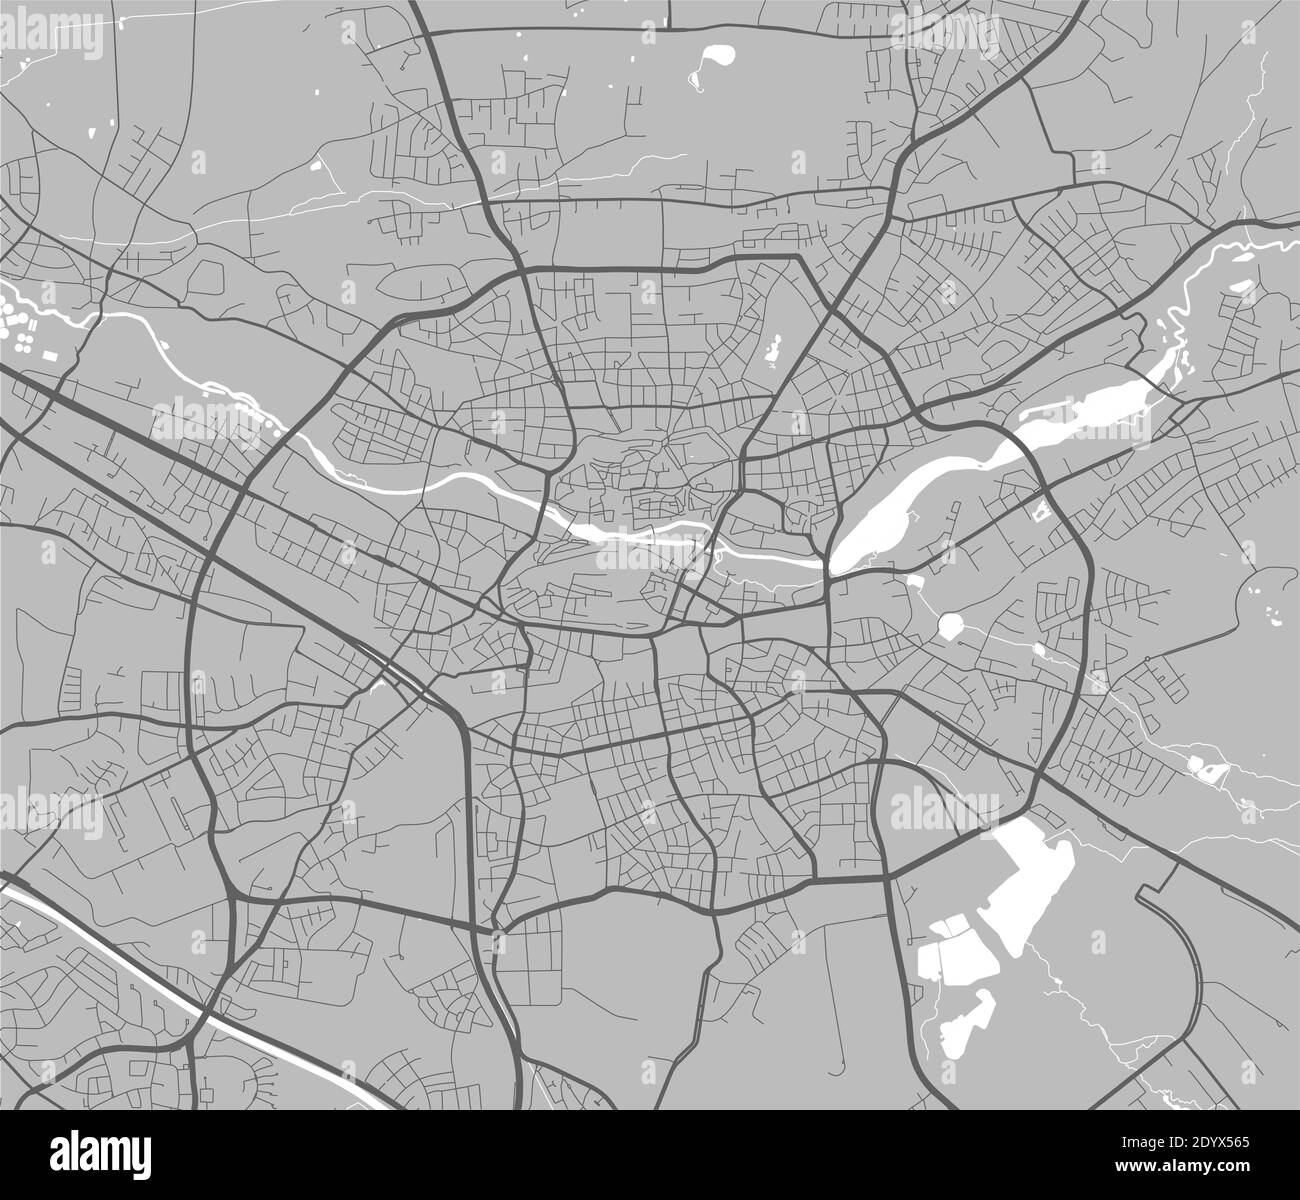 Stadtkarte von Nürnberg. Vektor-Illustration, Nürnberg Karte Kunst Poster. Straßenkarte mit Straßen, Ansicht der Metropolregion. Stock Vektor